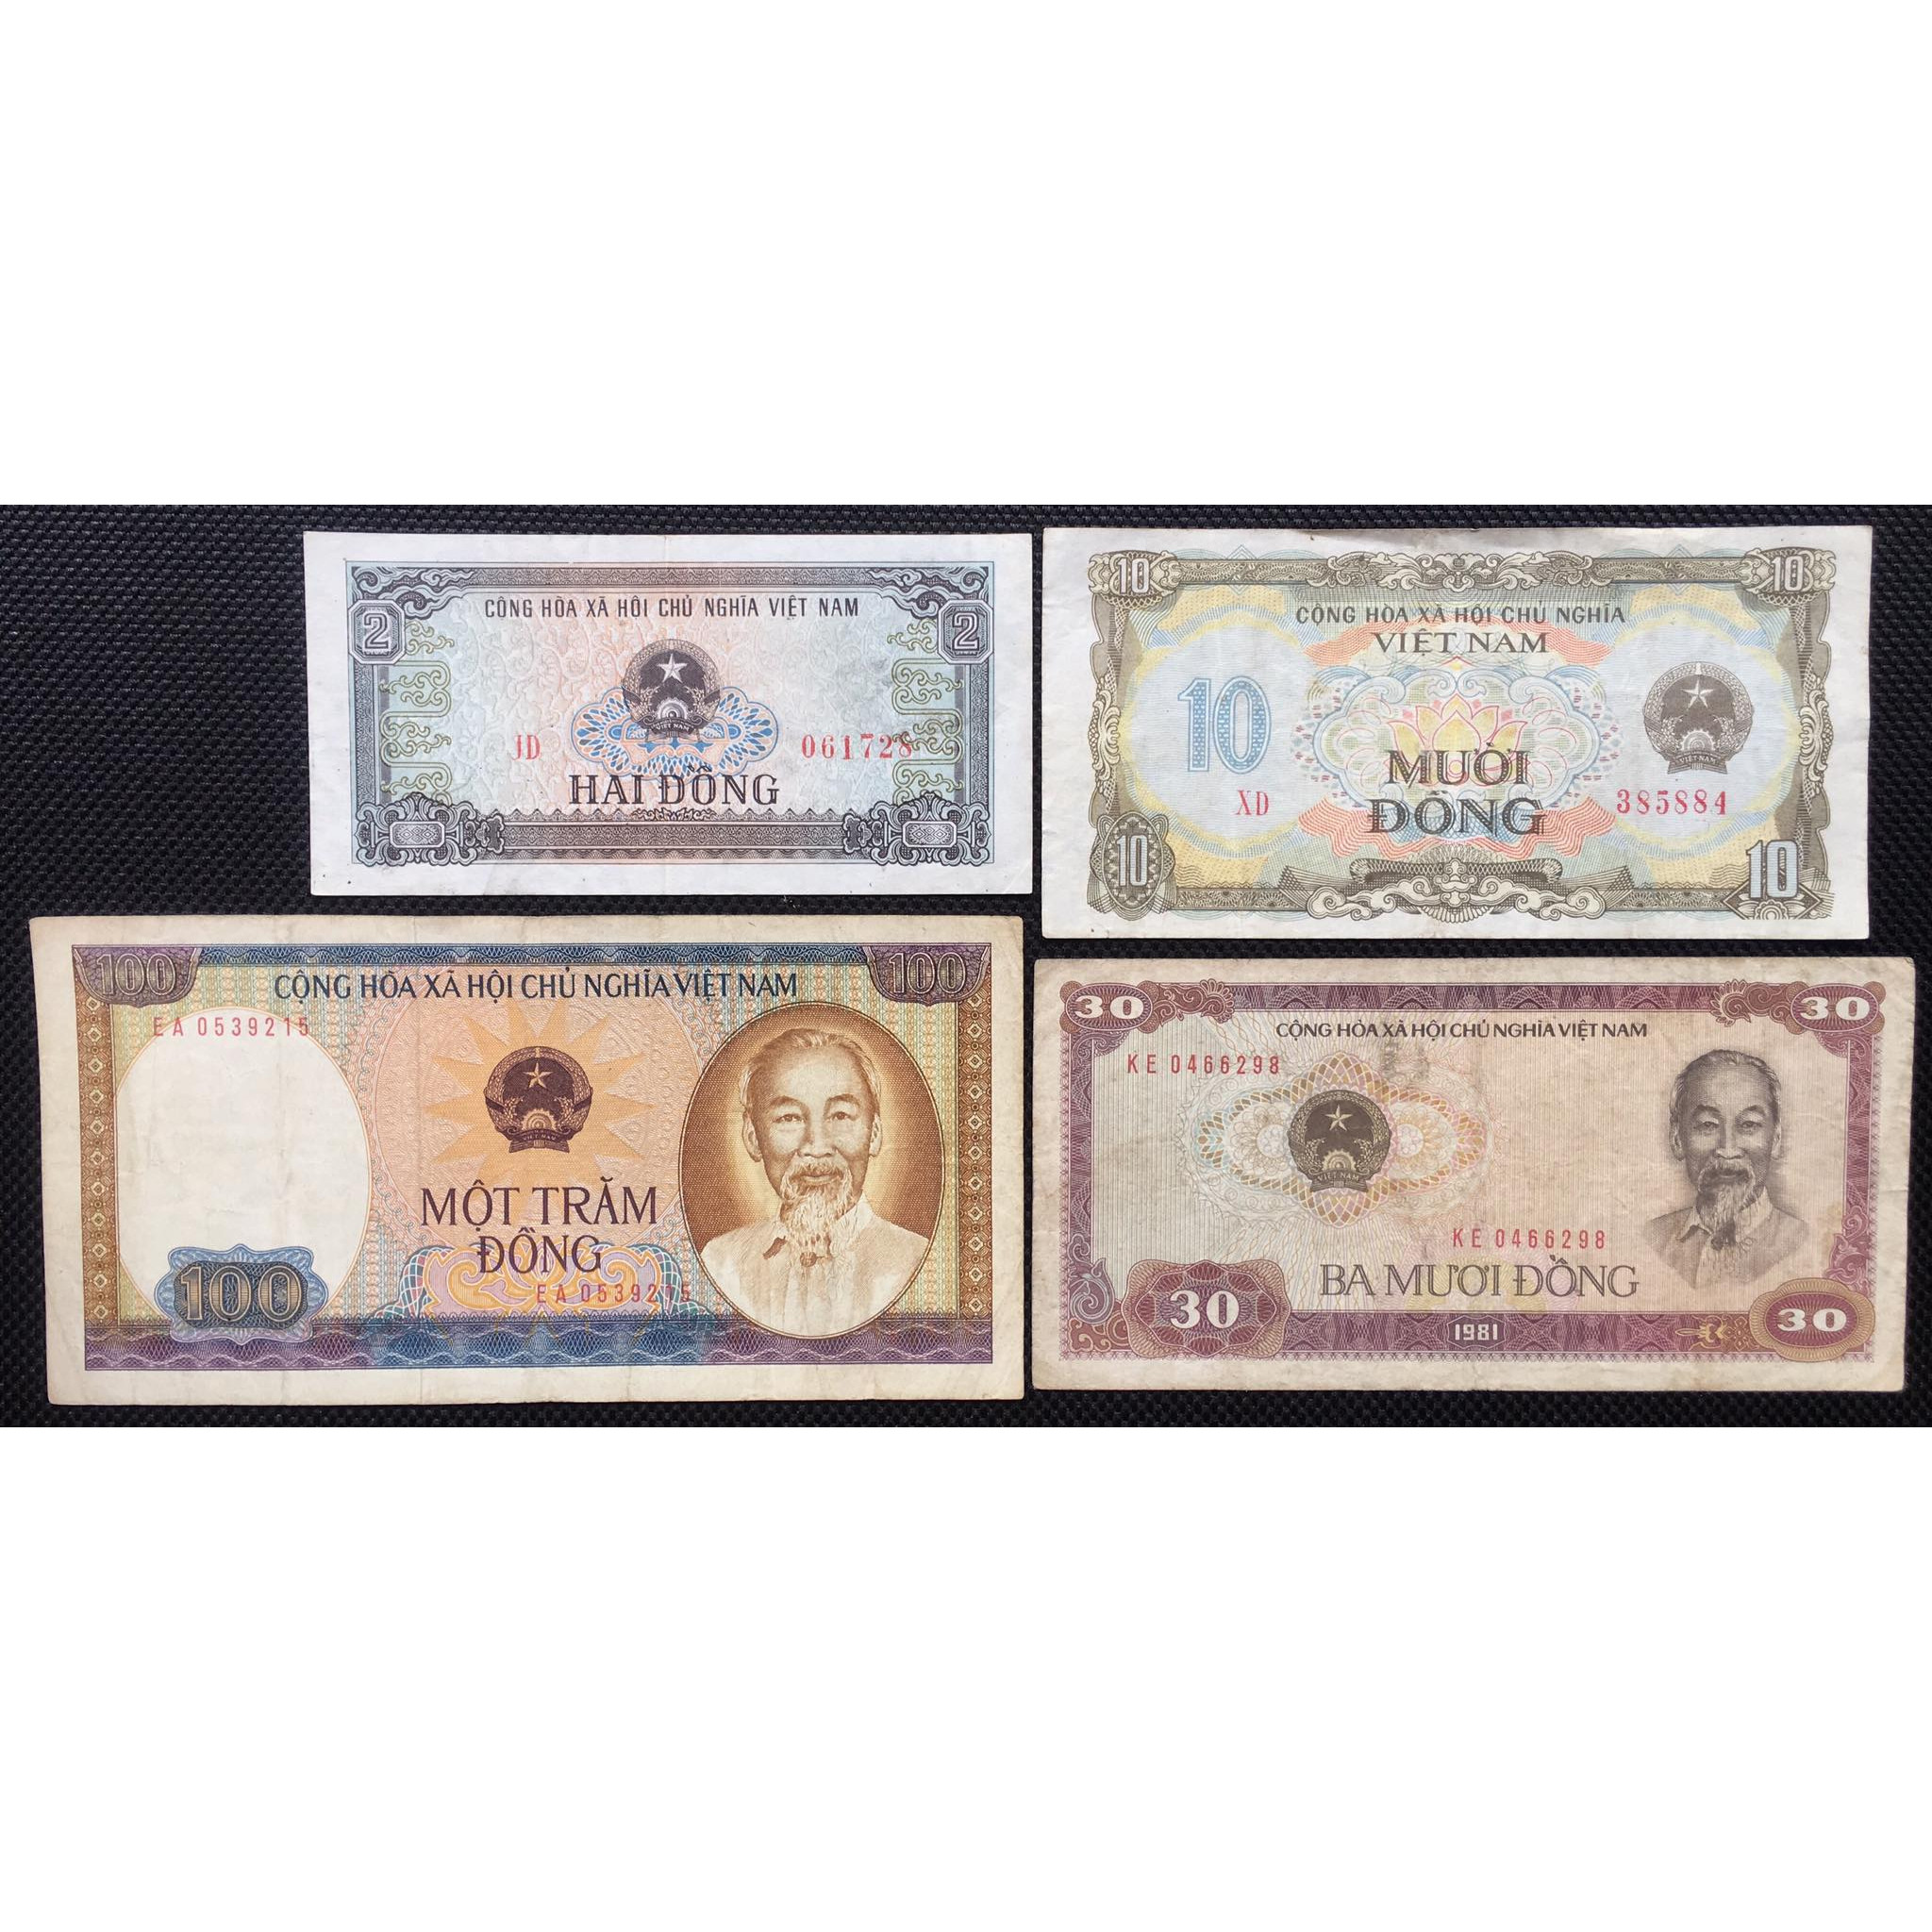 Đủ bộ tiền Việt Nam bao cáp 1980 - 1981. 4 tờ sưu tầm